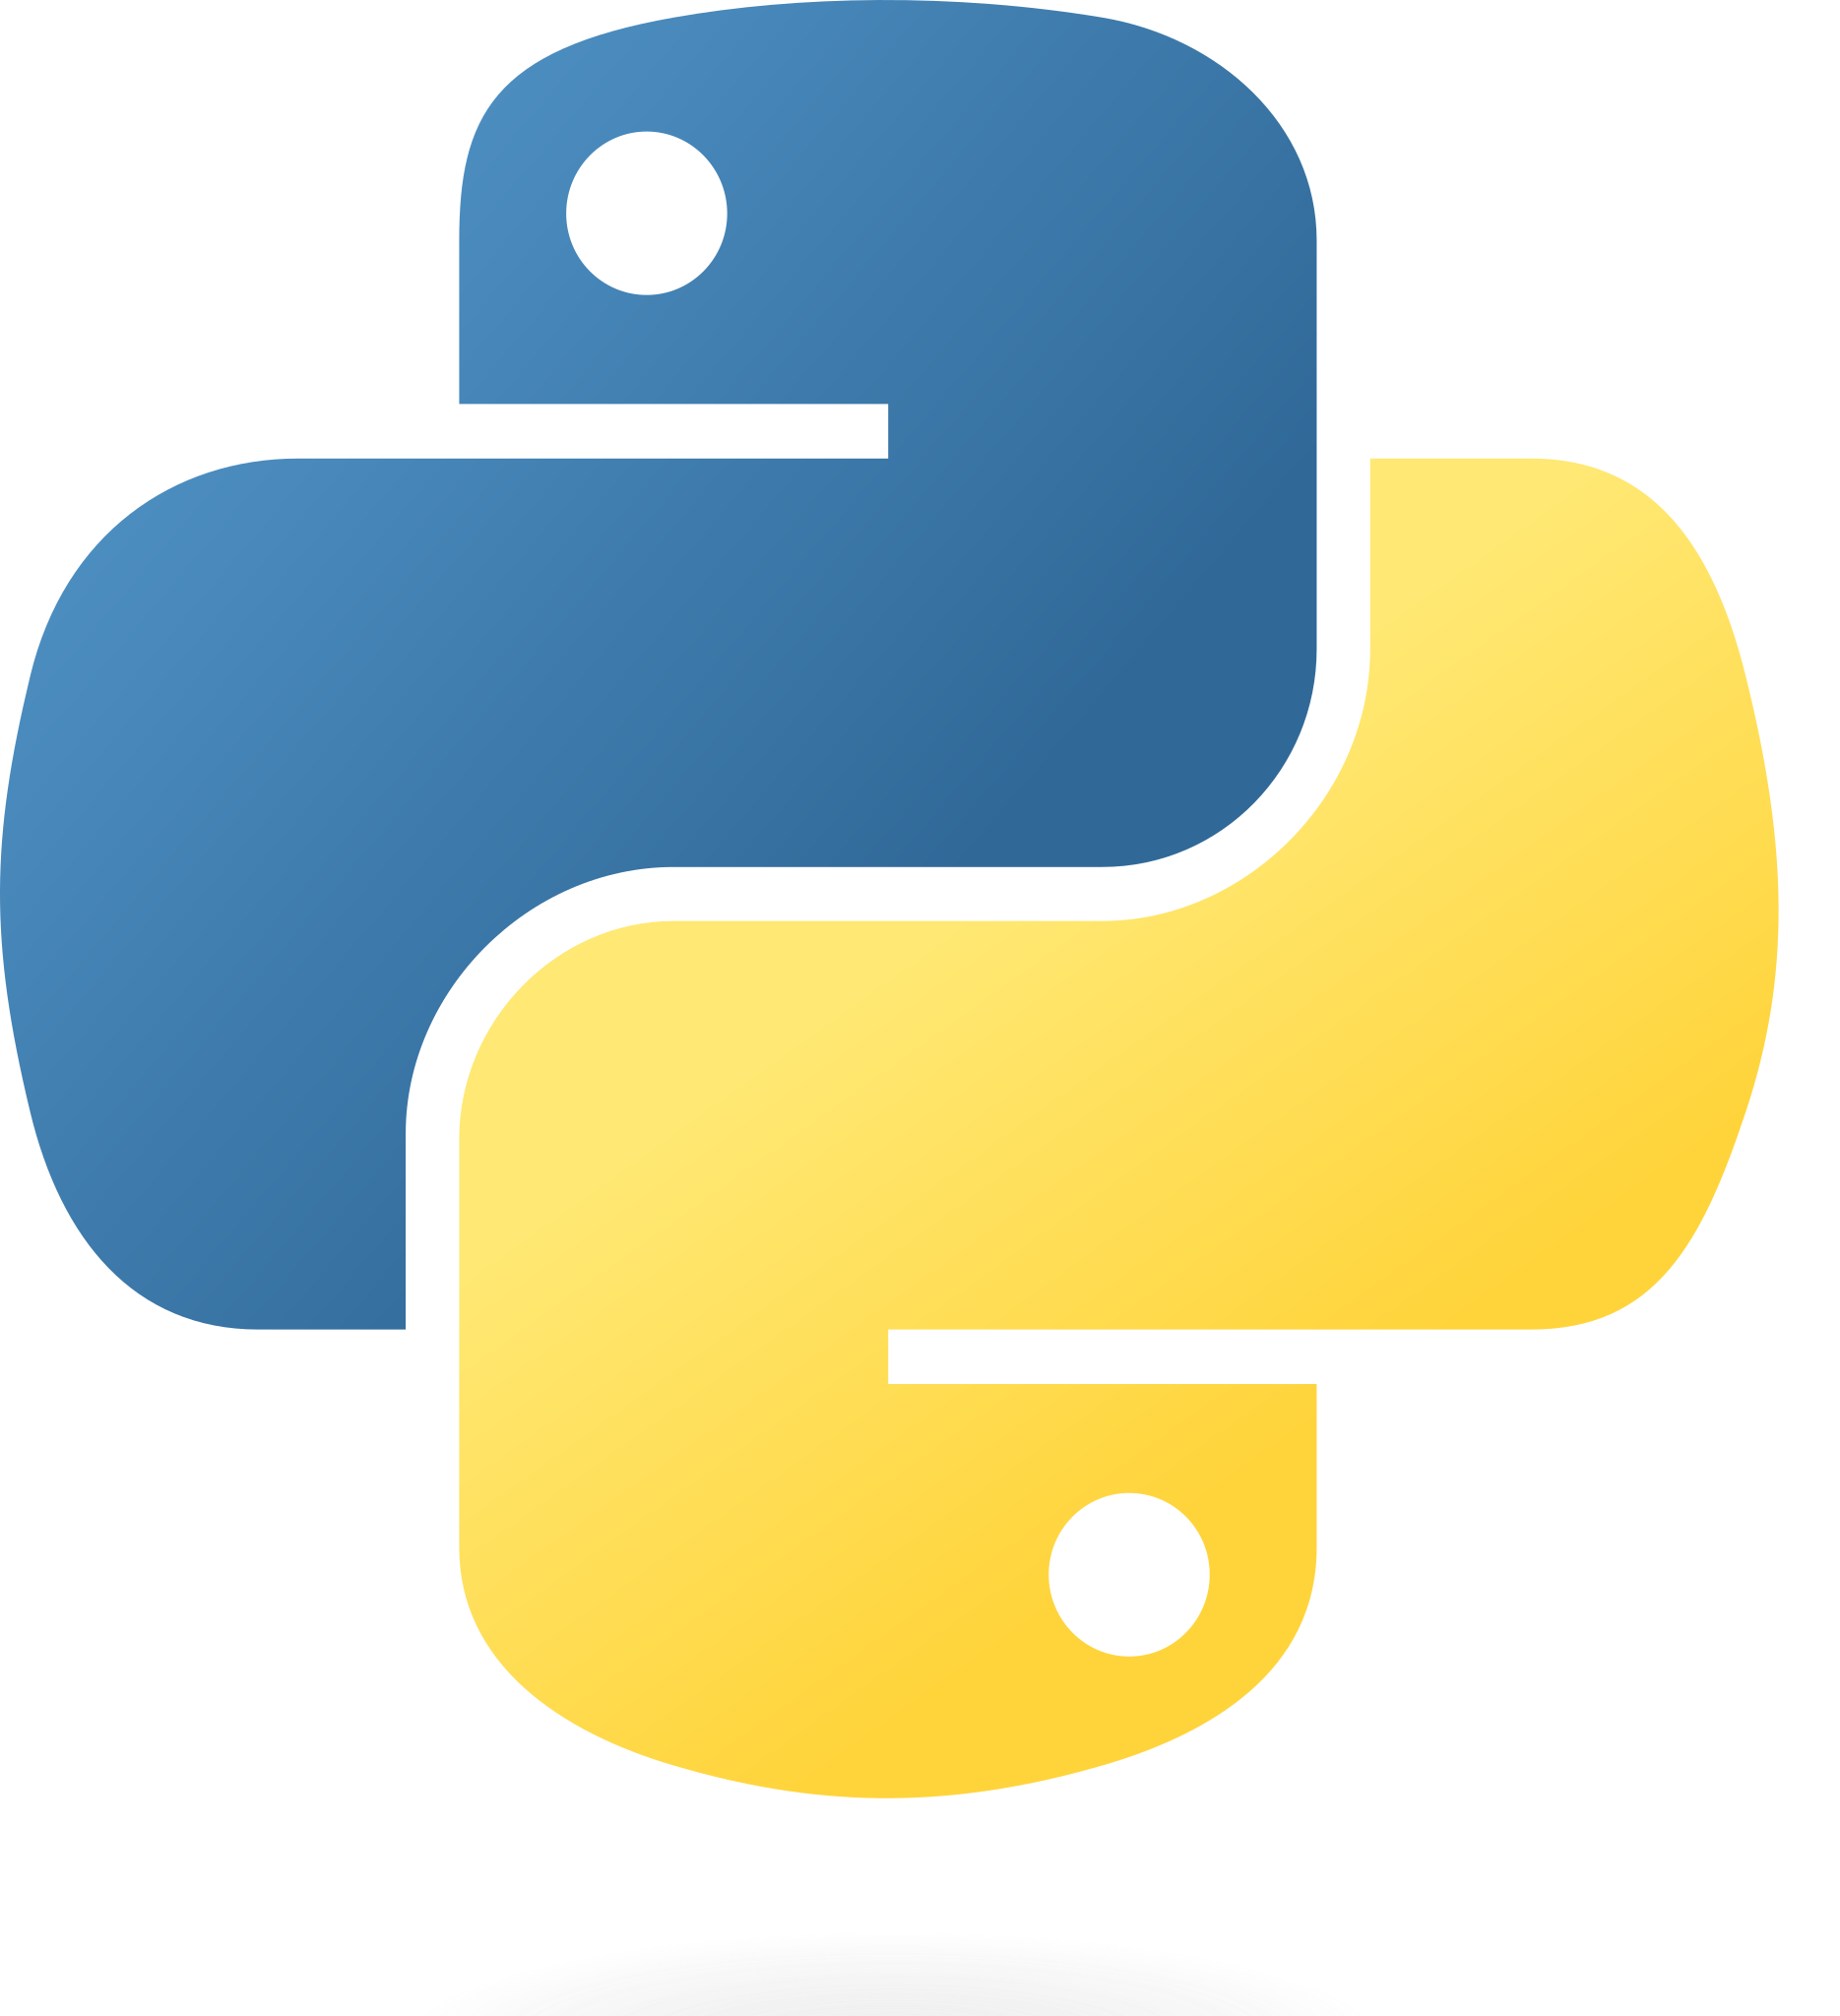 [Python] numpy로 csv 파일 내용 가져오기